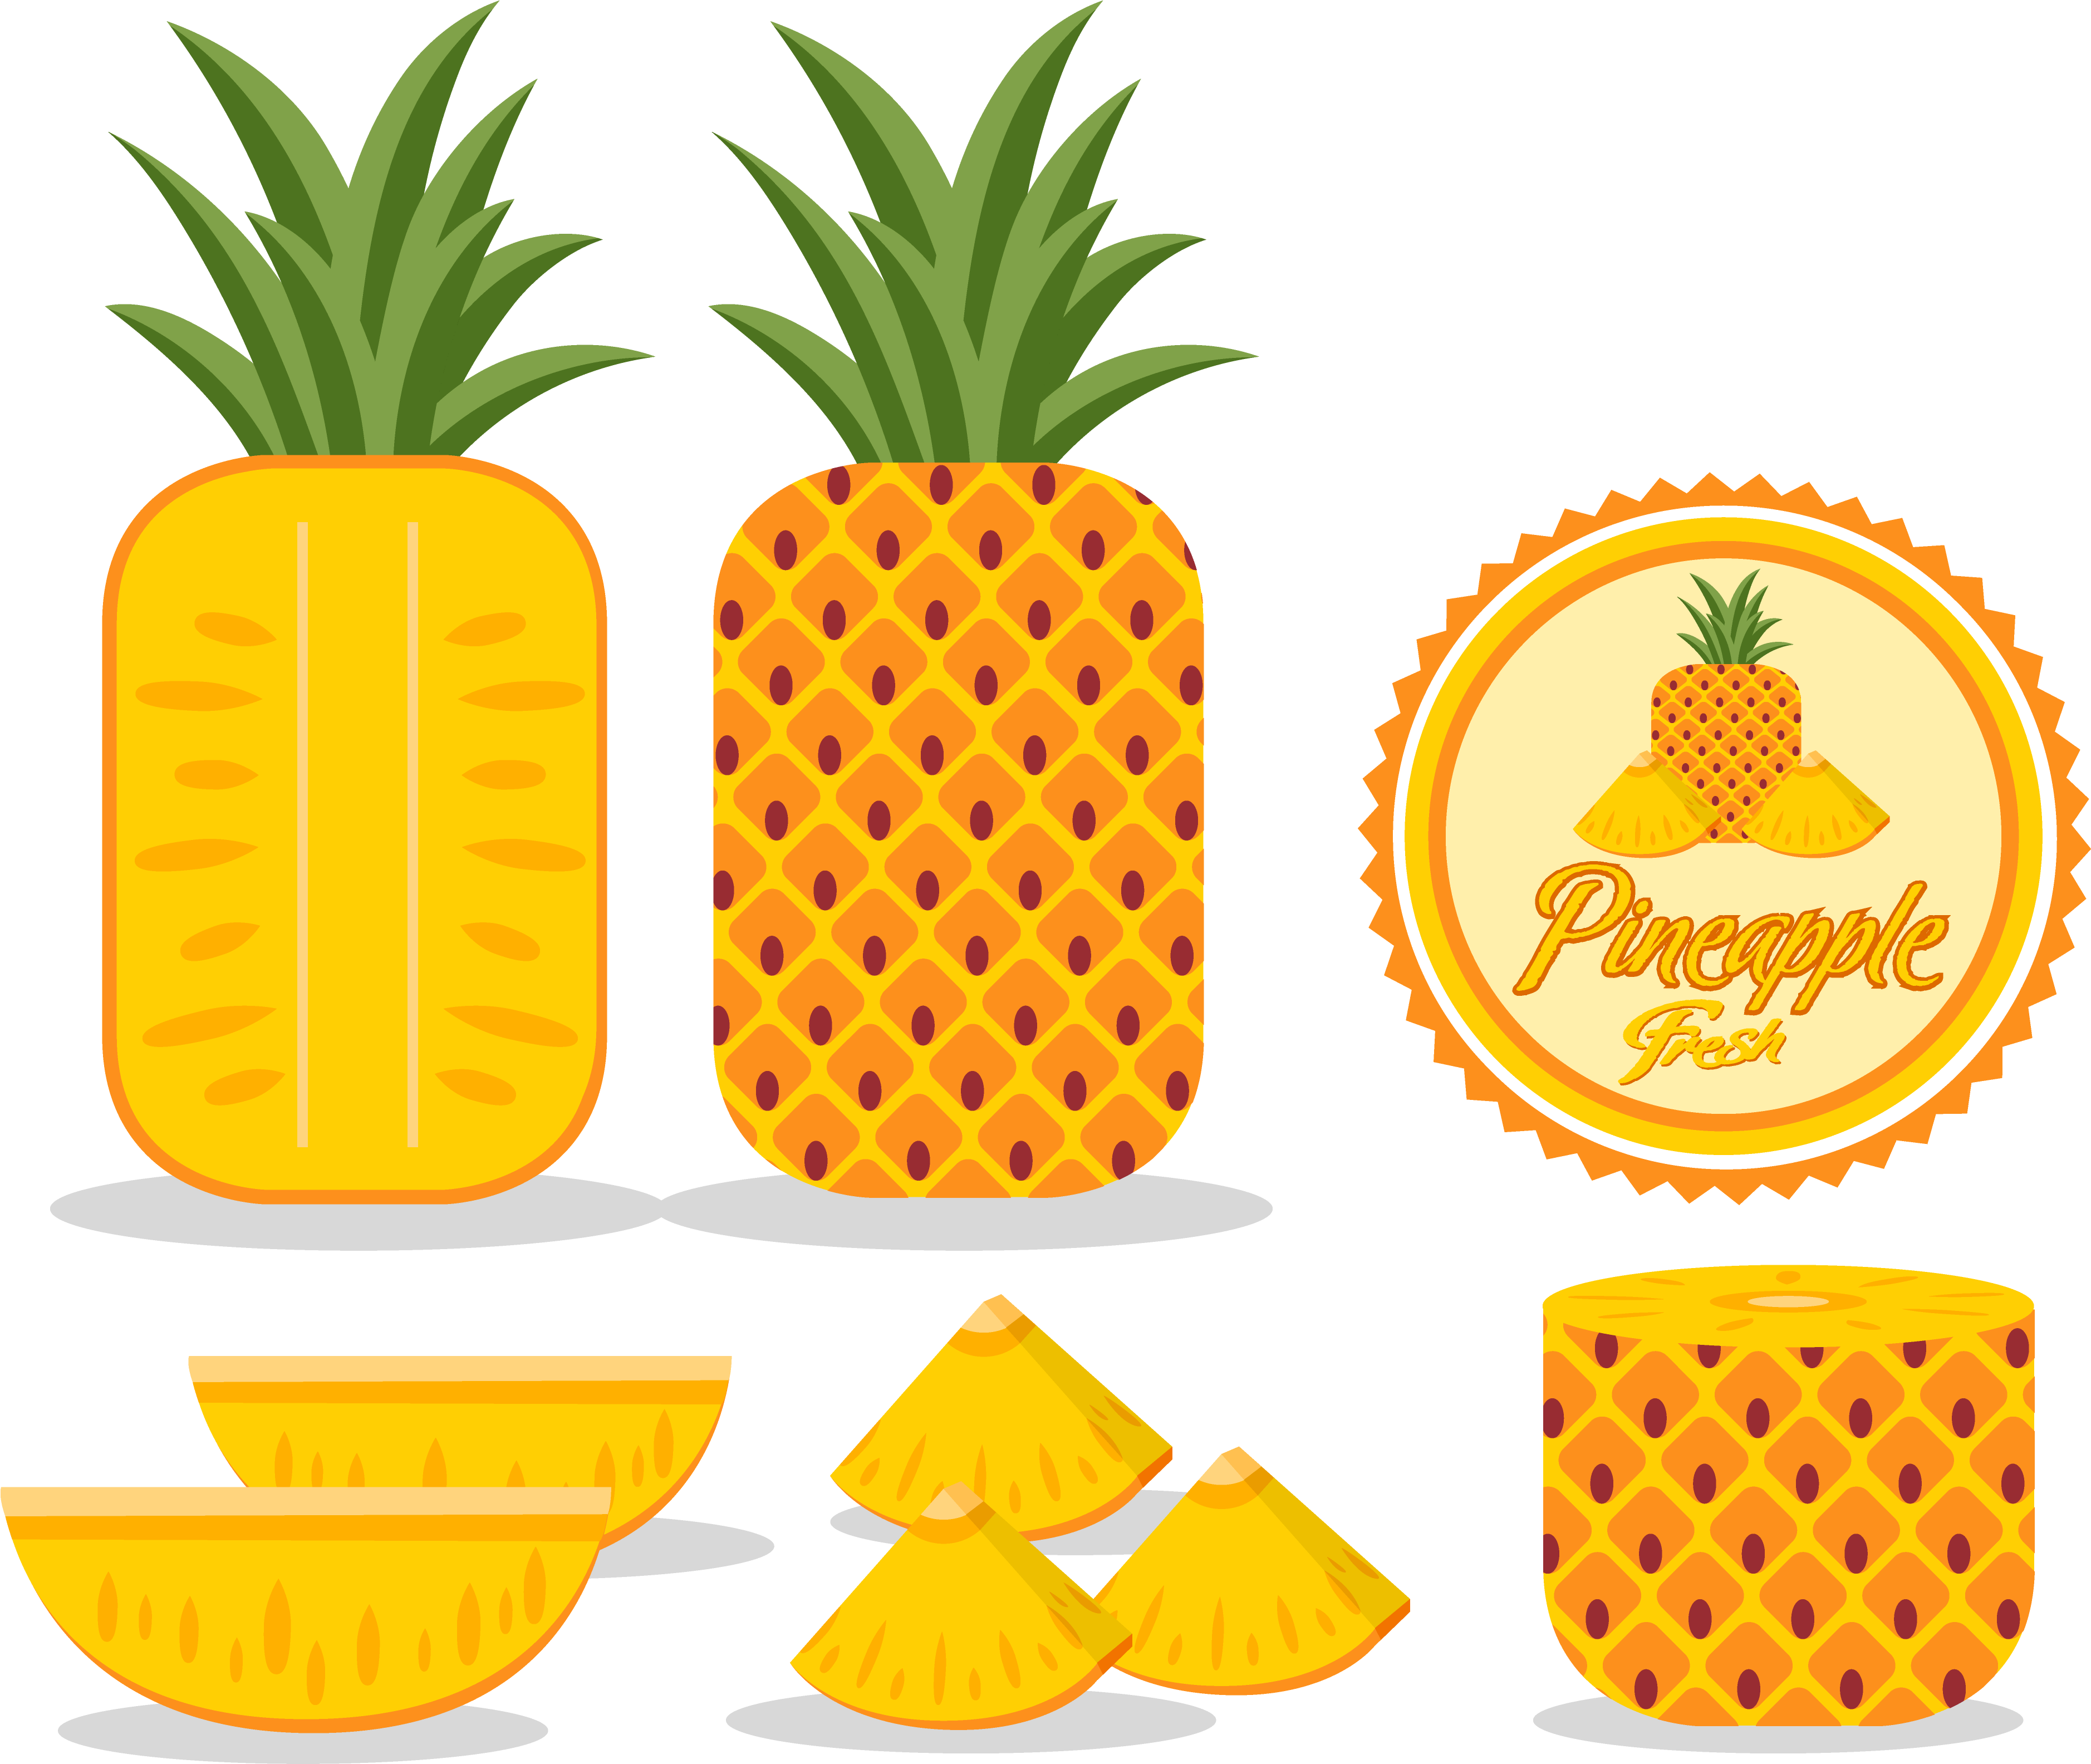 Pineapple Adobe Illustrator Logo - Fruit (3812x3187)